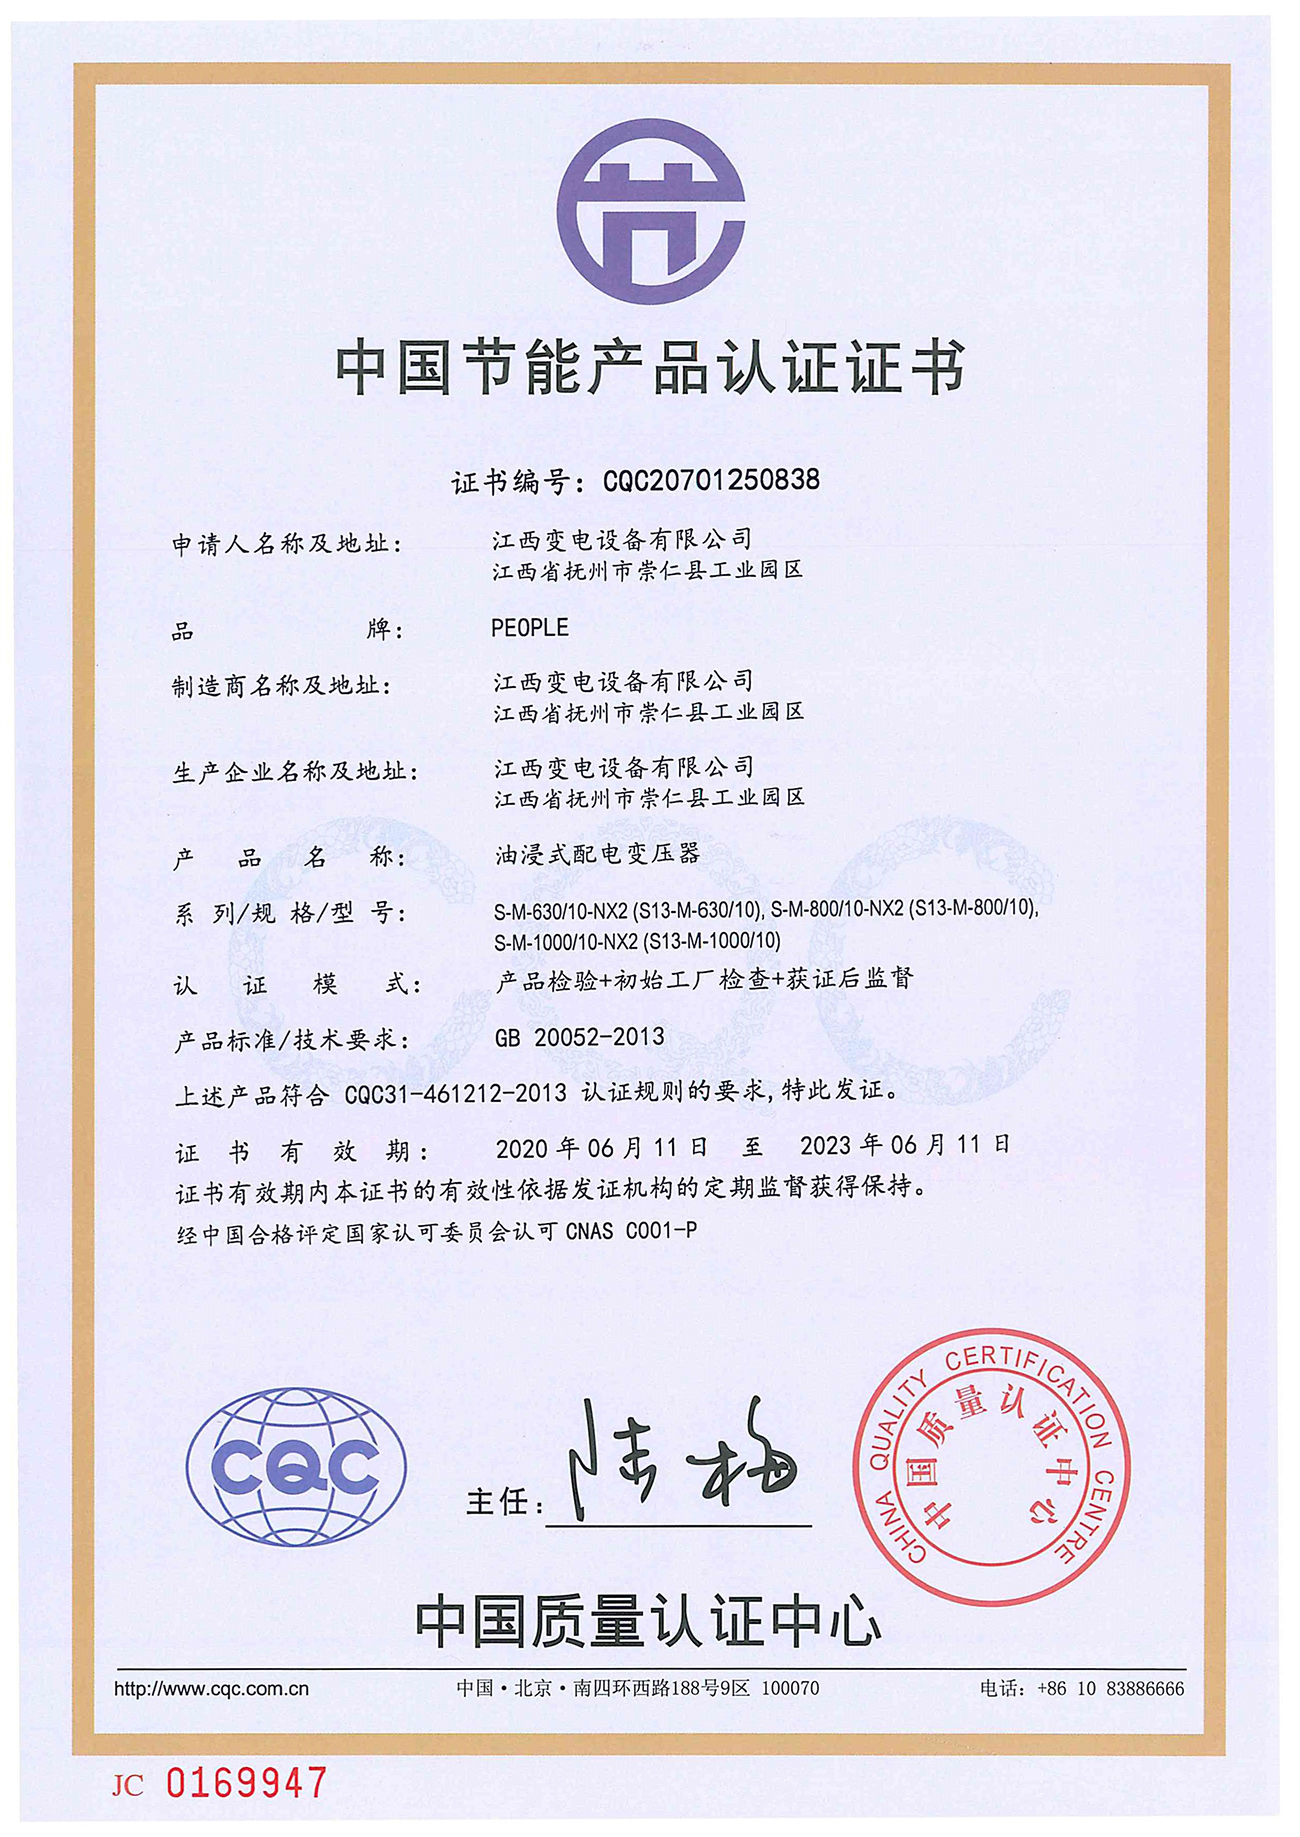 中国节能产品认证证书:s